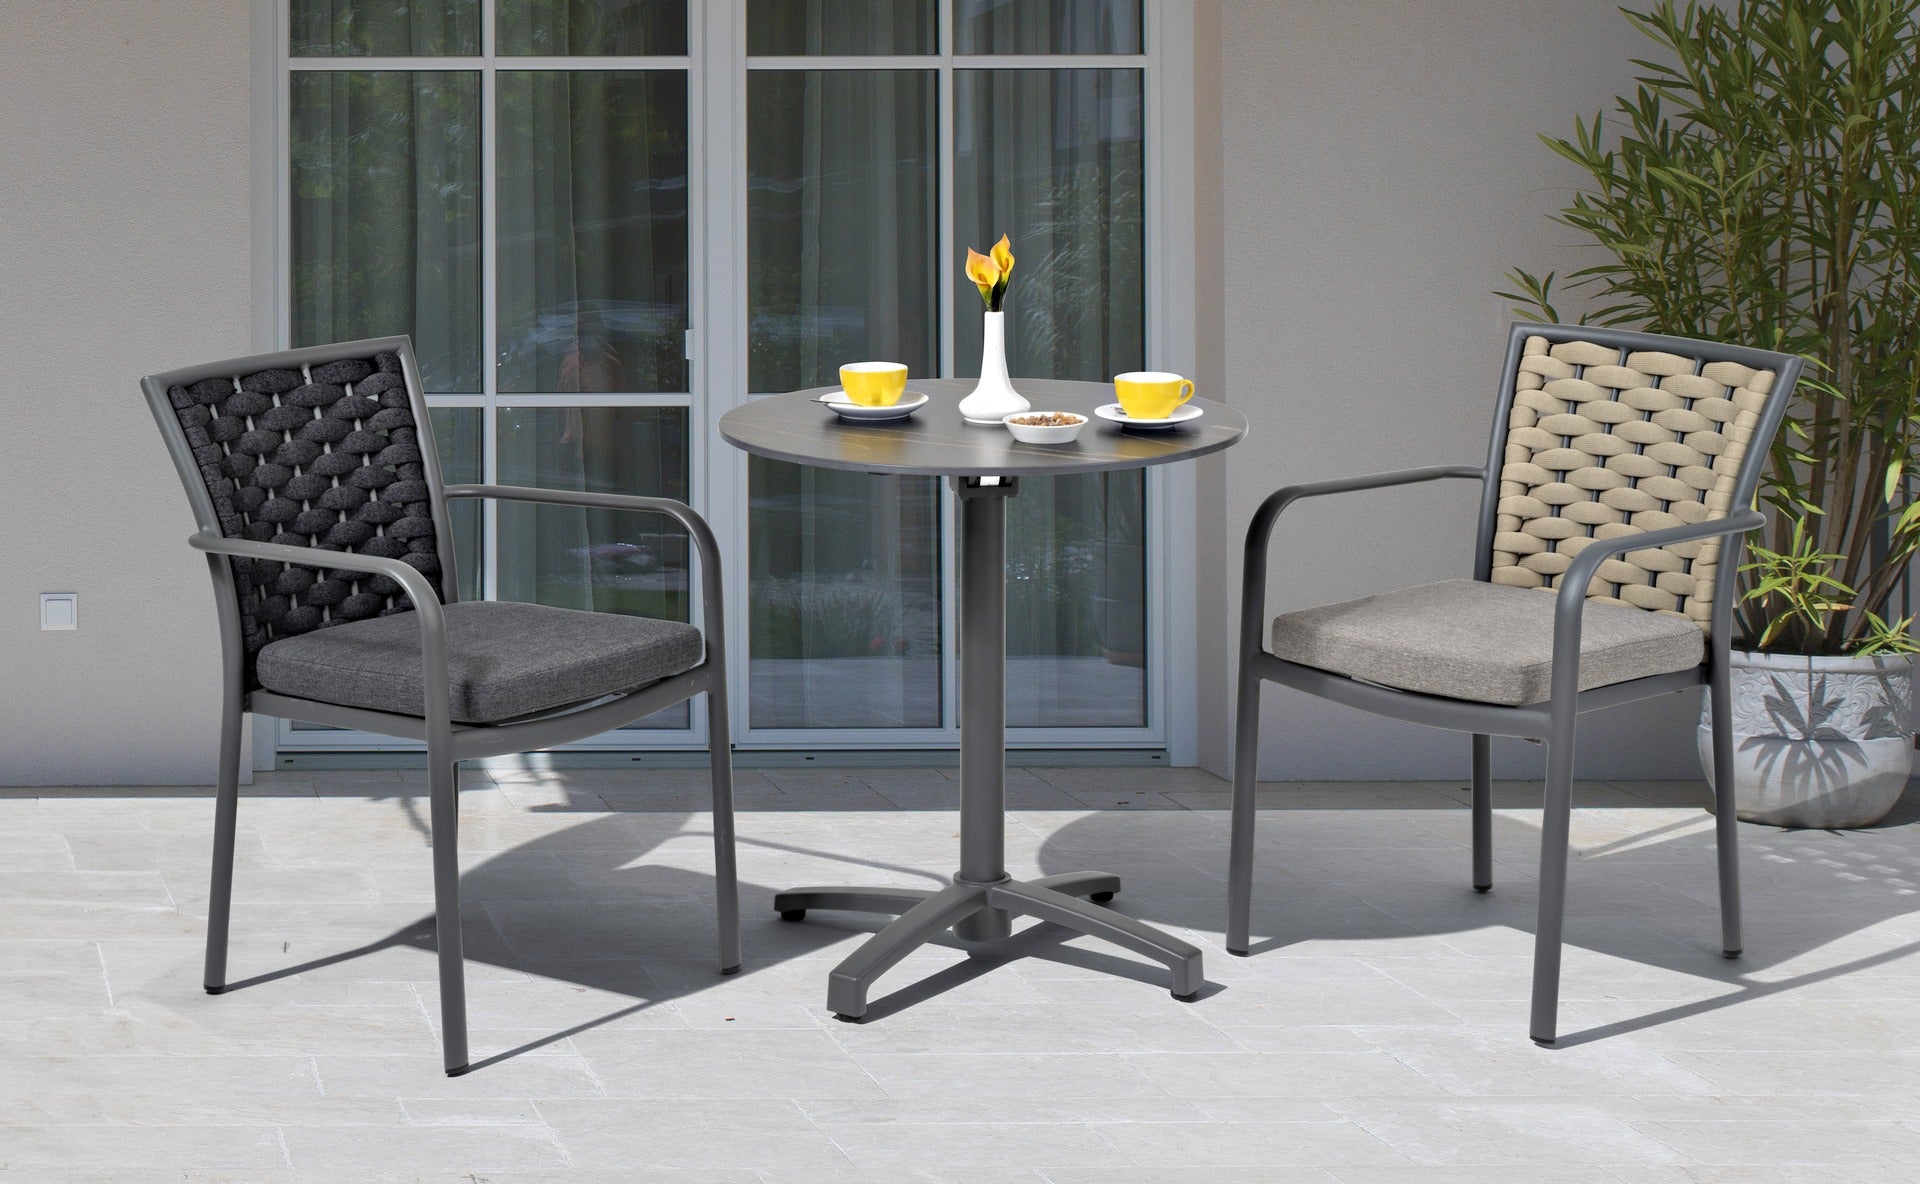 Stilvoller 'Clara' Armstuhl mit Metallgestell und Schnüren, schnell trocknenden Textilschnüren, gepaart mit einem bequemen grauen Sitzkissen, angeboten von Gartenmoebelshop.at - Beide Farben nebeneinen auf einer Terrasse